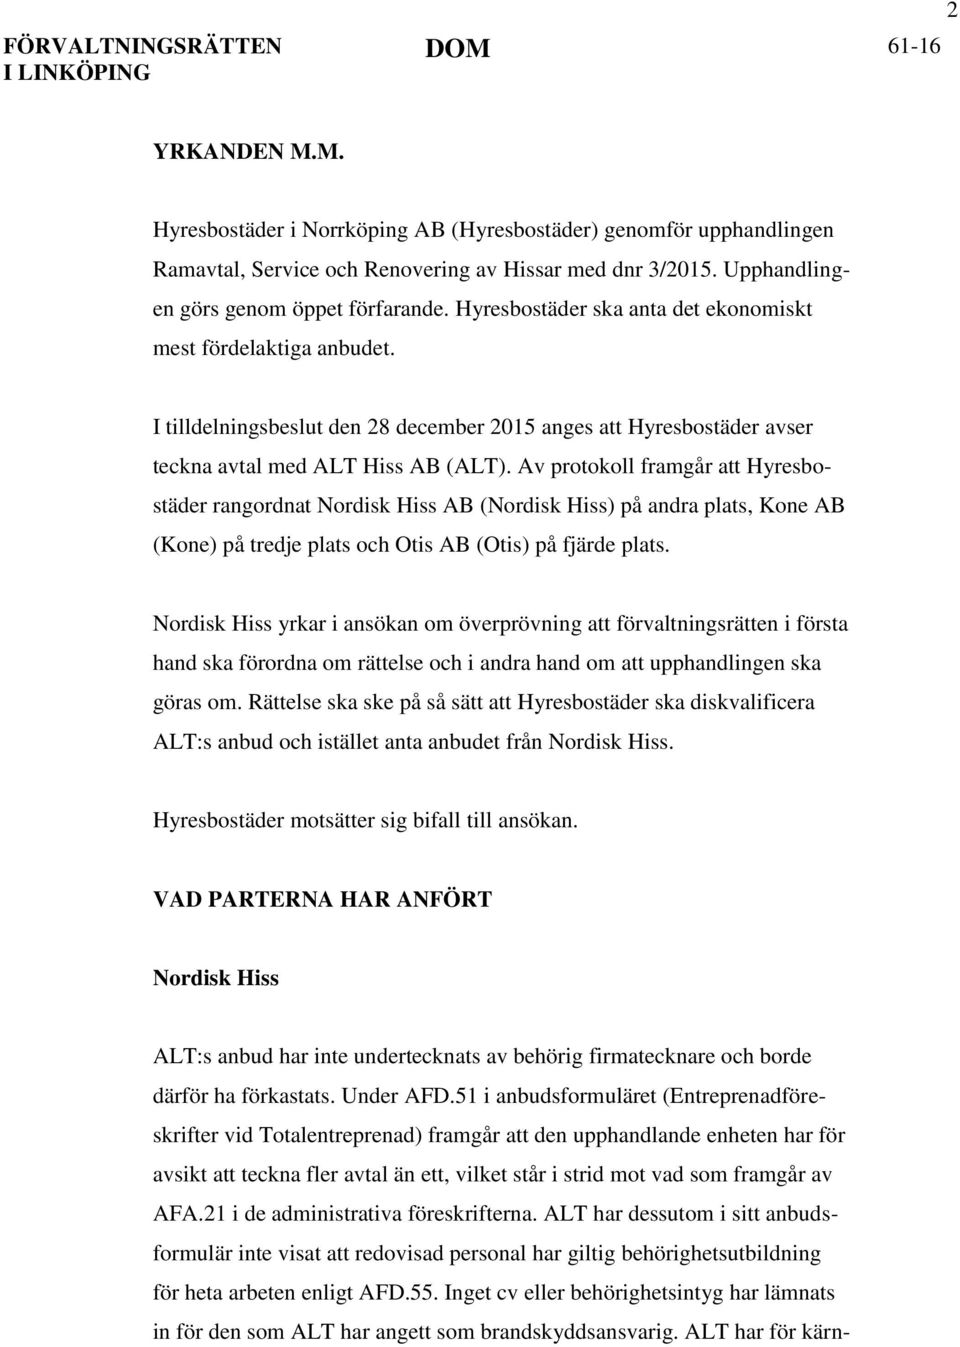 Av protokoll framgår att Hyresbostäder rangordnat Nordisk Hiss AB (Nordisk Hiss) på andra plats, Kone AB (Kone) på tredje plats och Otis AB (Otis) på fjärde plats.